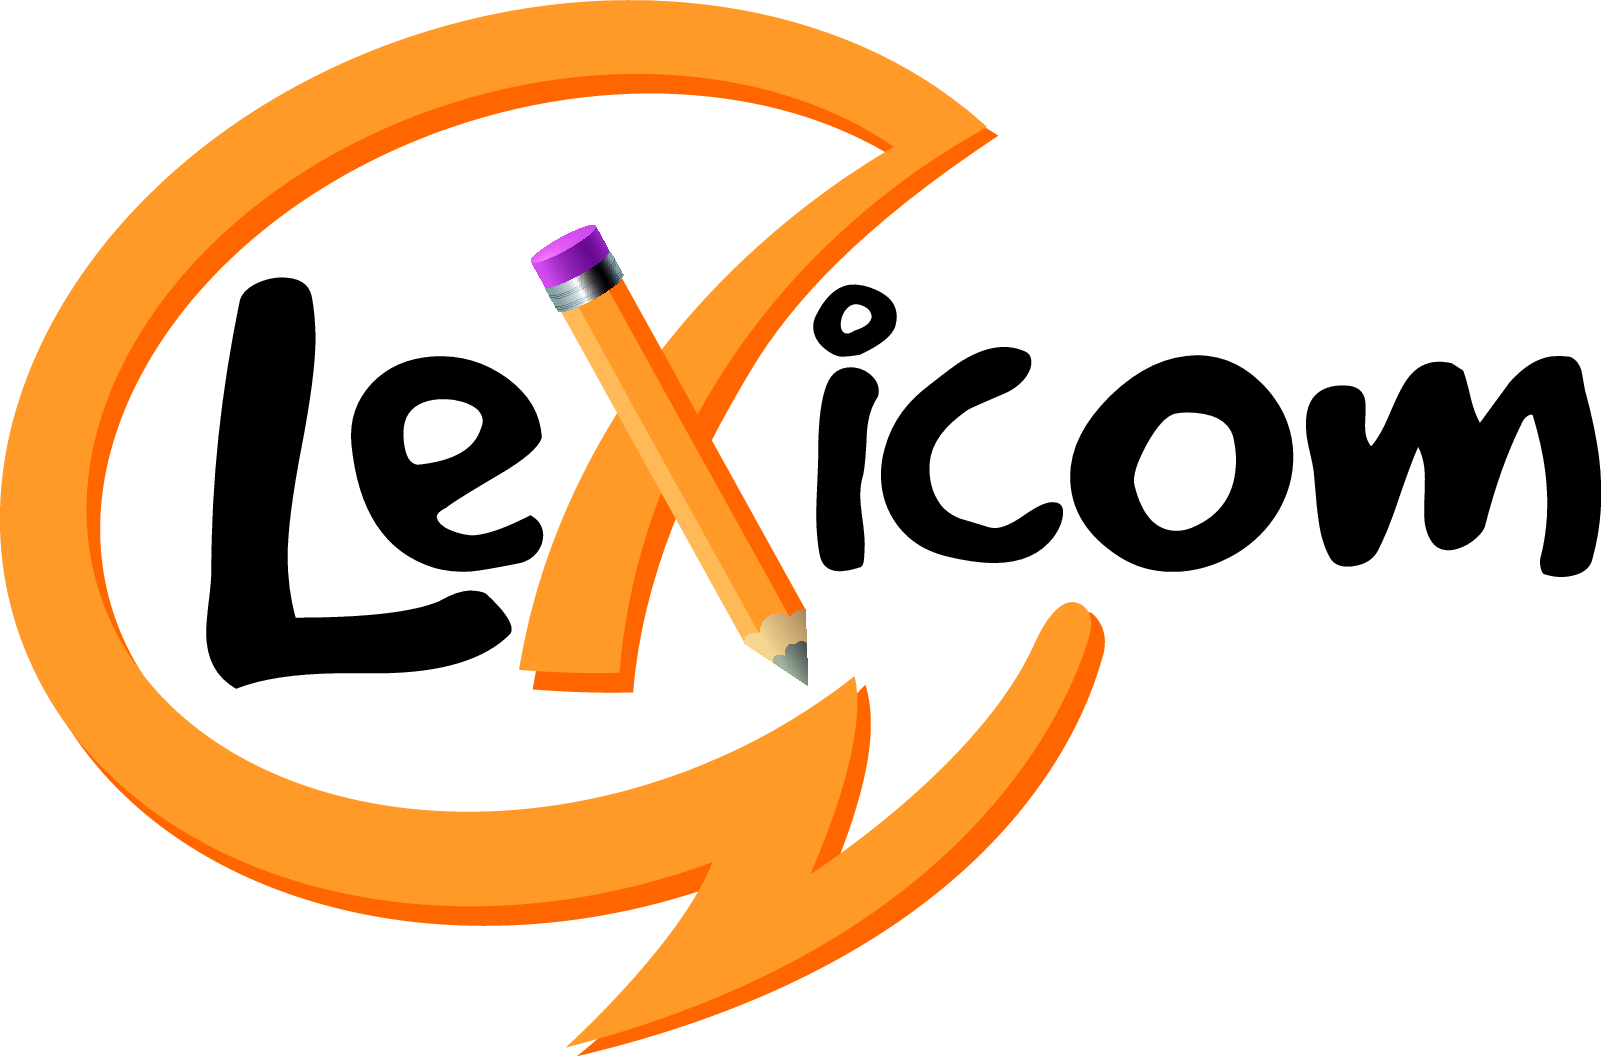 Lexicom